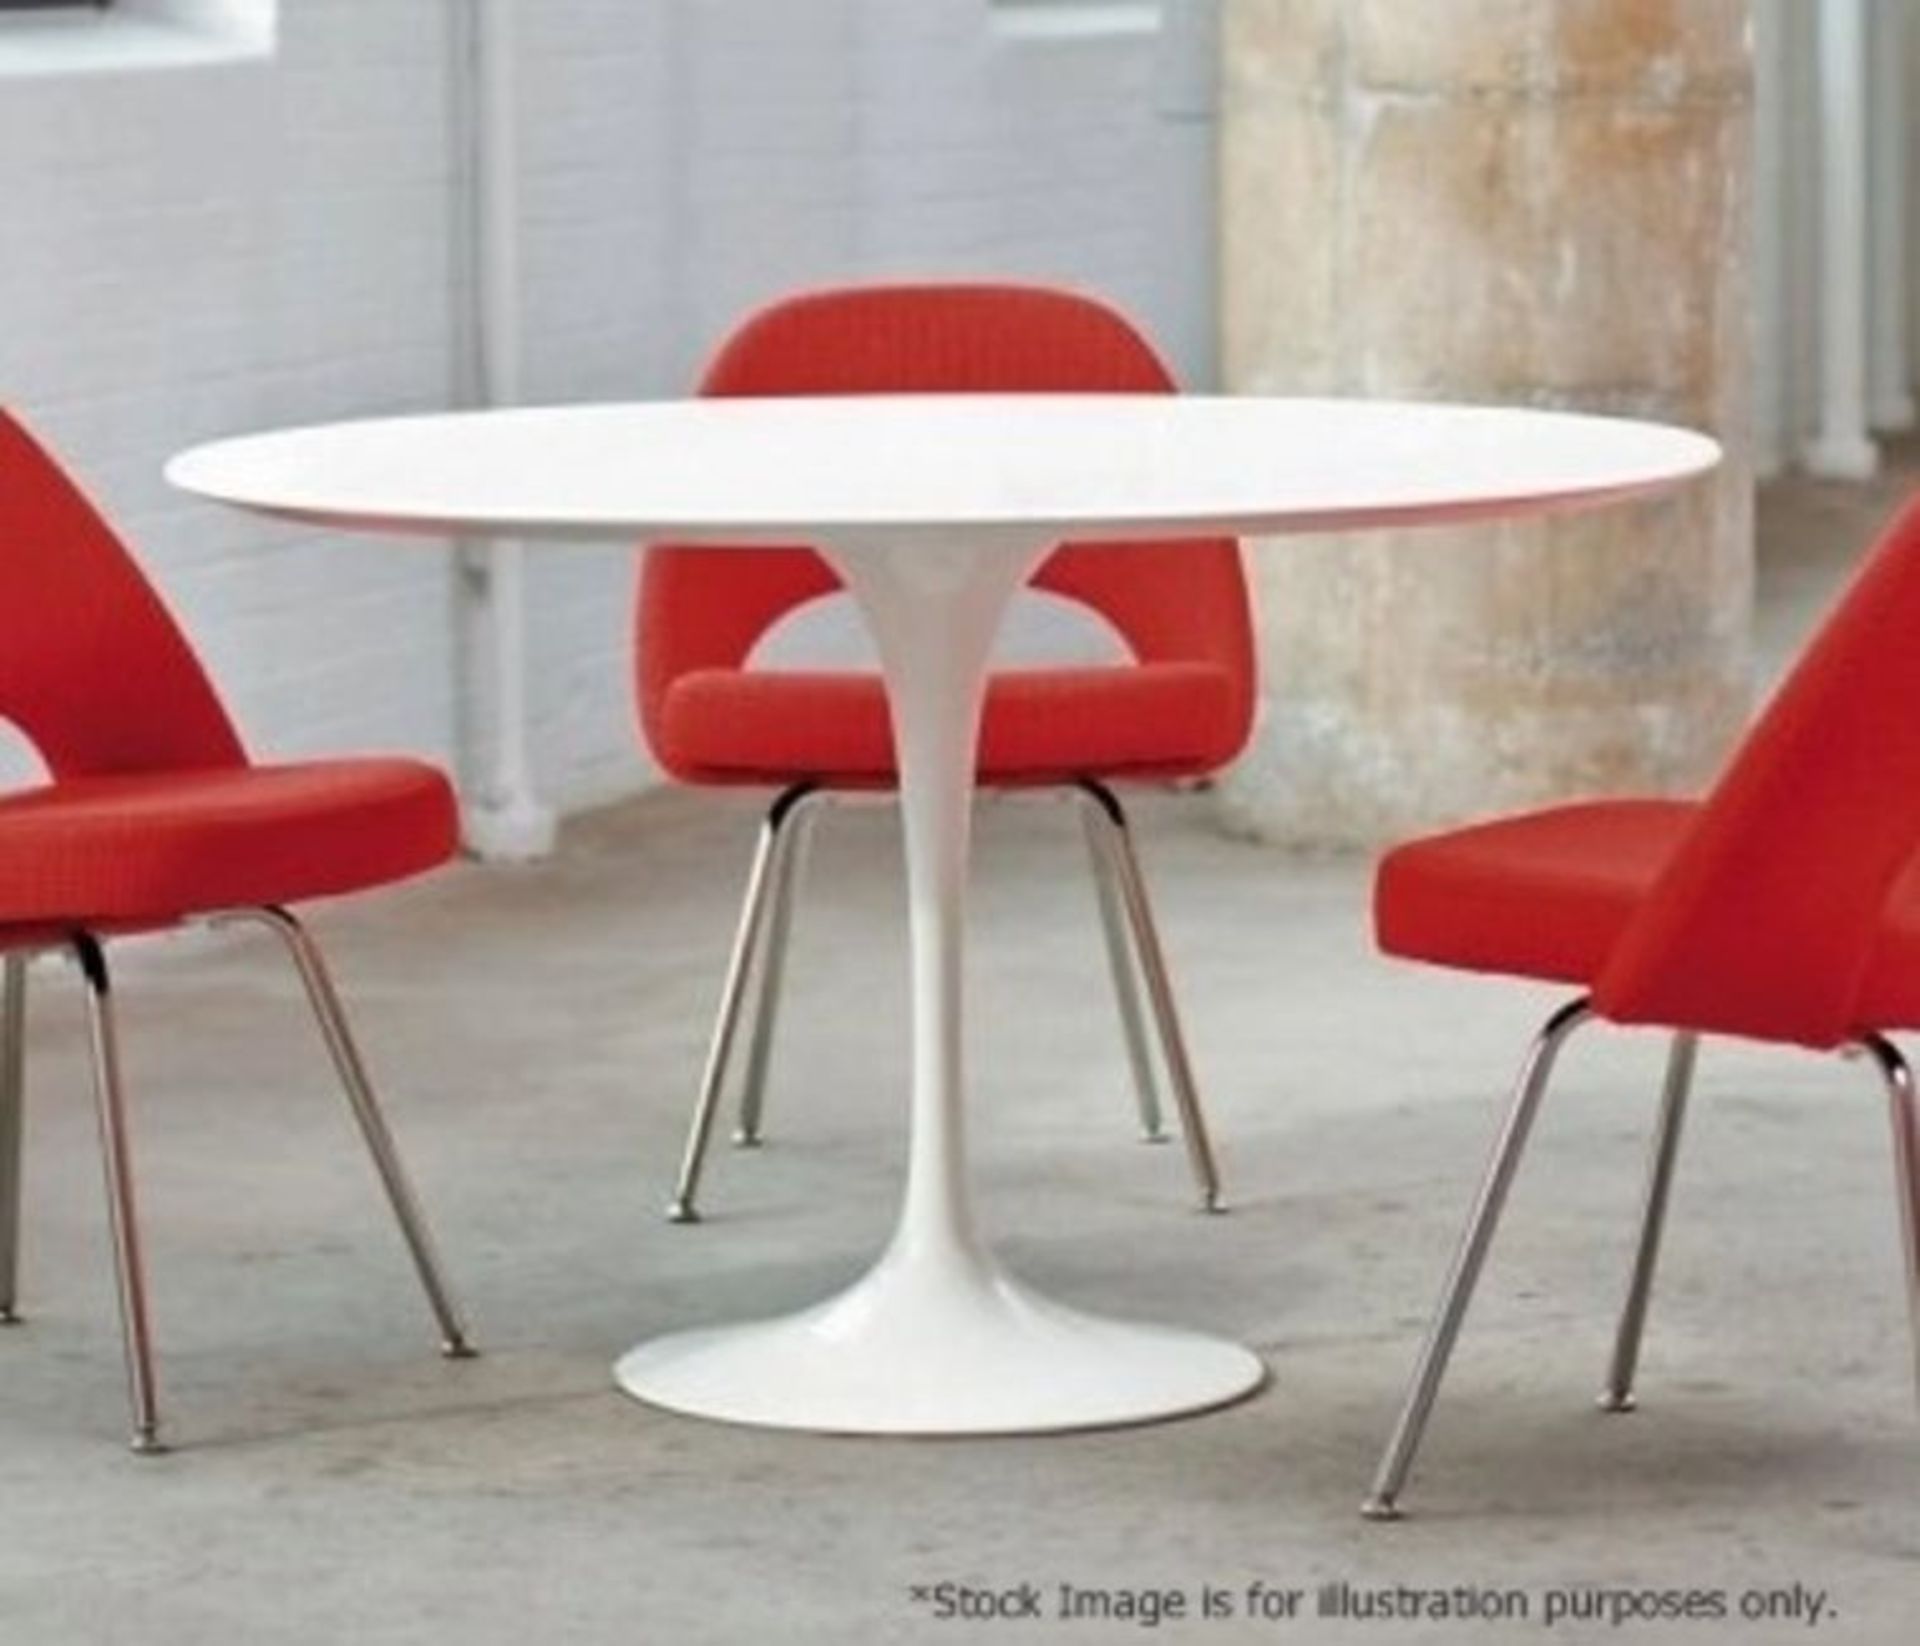 Tulip Eero Saarinen Inspired Table, 90cm - NEW - Image 3 of 9